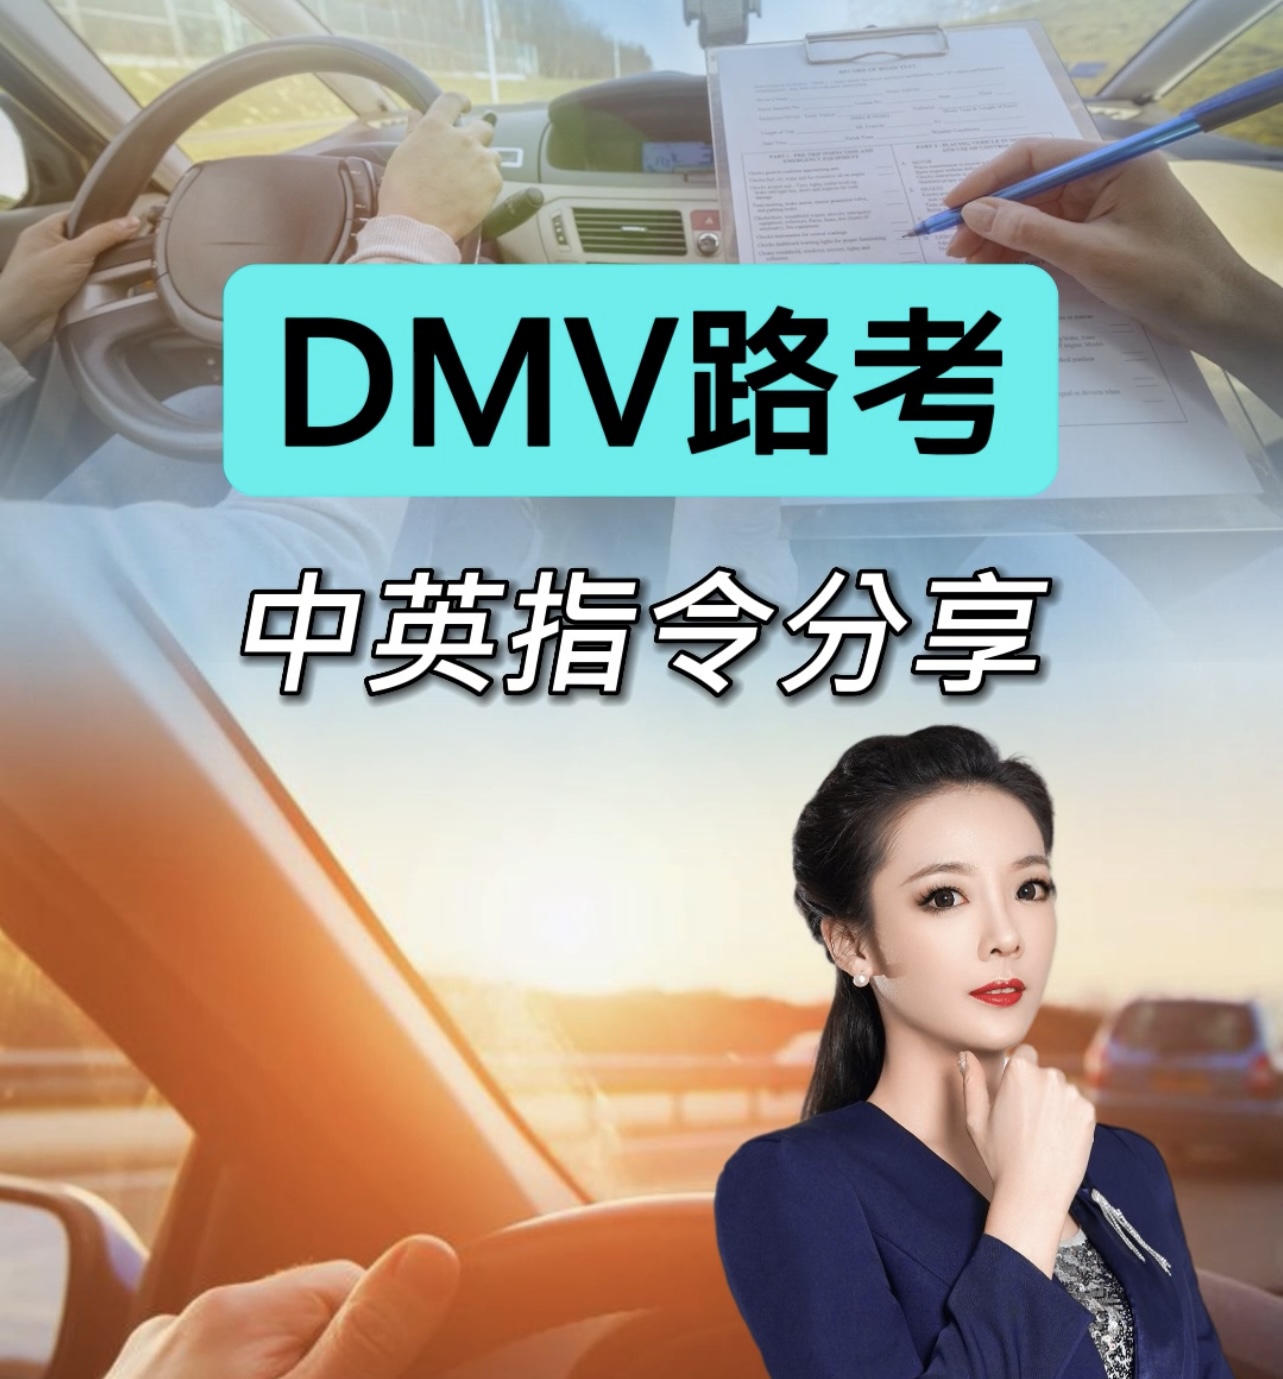 美国驾照DMV路考超全英文指令分享